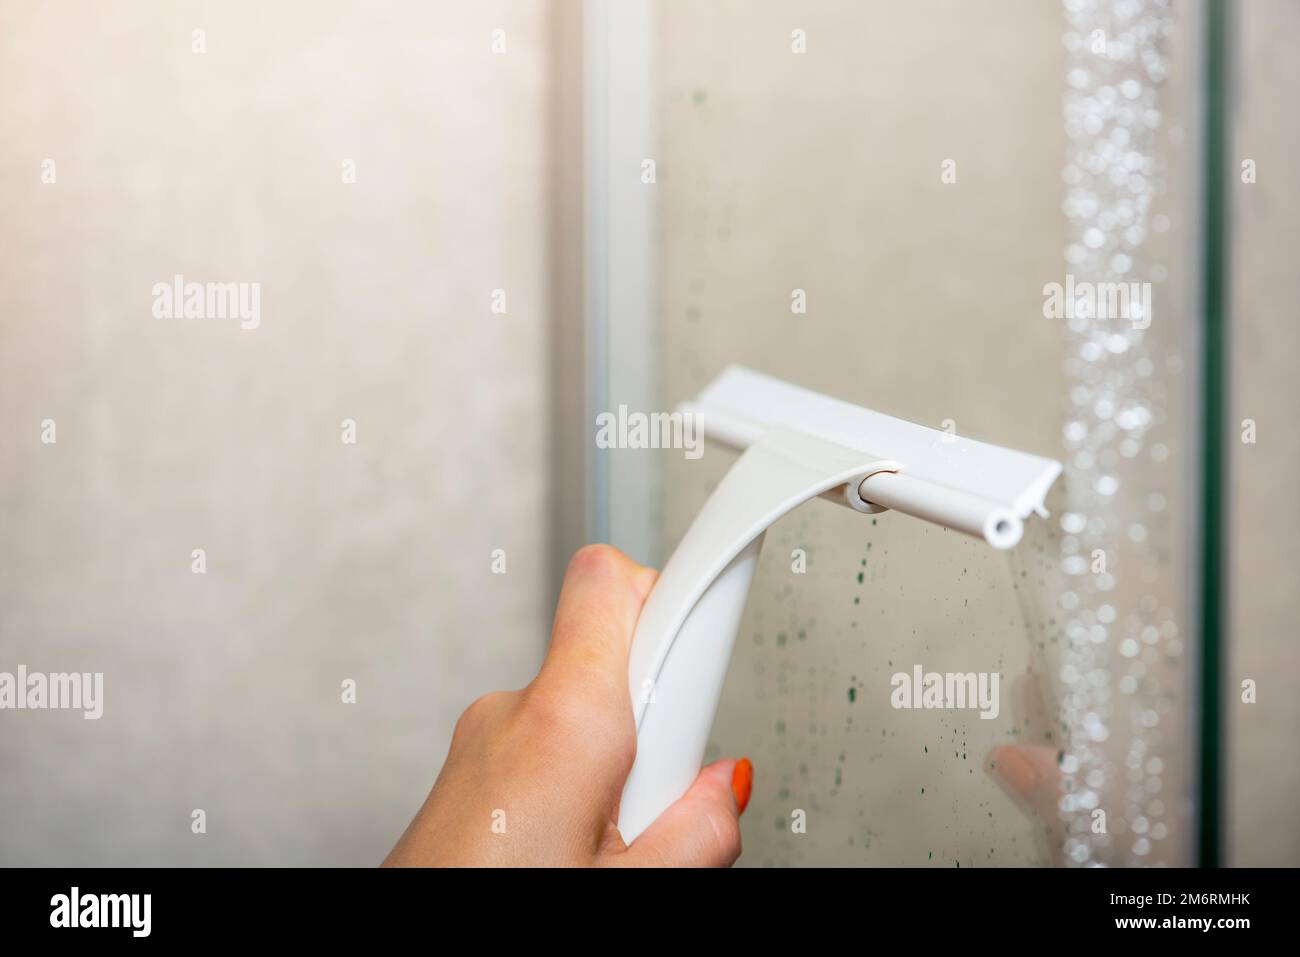 Reinigung der Duschkabine. Reinigung der Glaswand der Duschkabine mit einem Glasschaber. Das Haus putzen, das Bad und die Dusche pflegen. Stockfoto